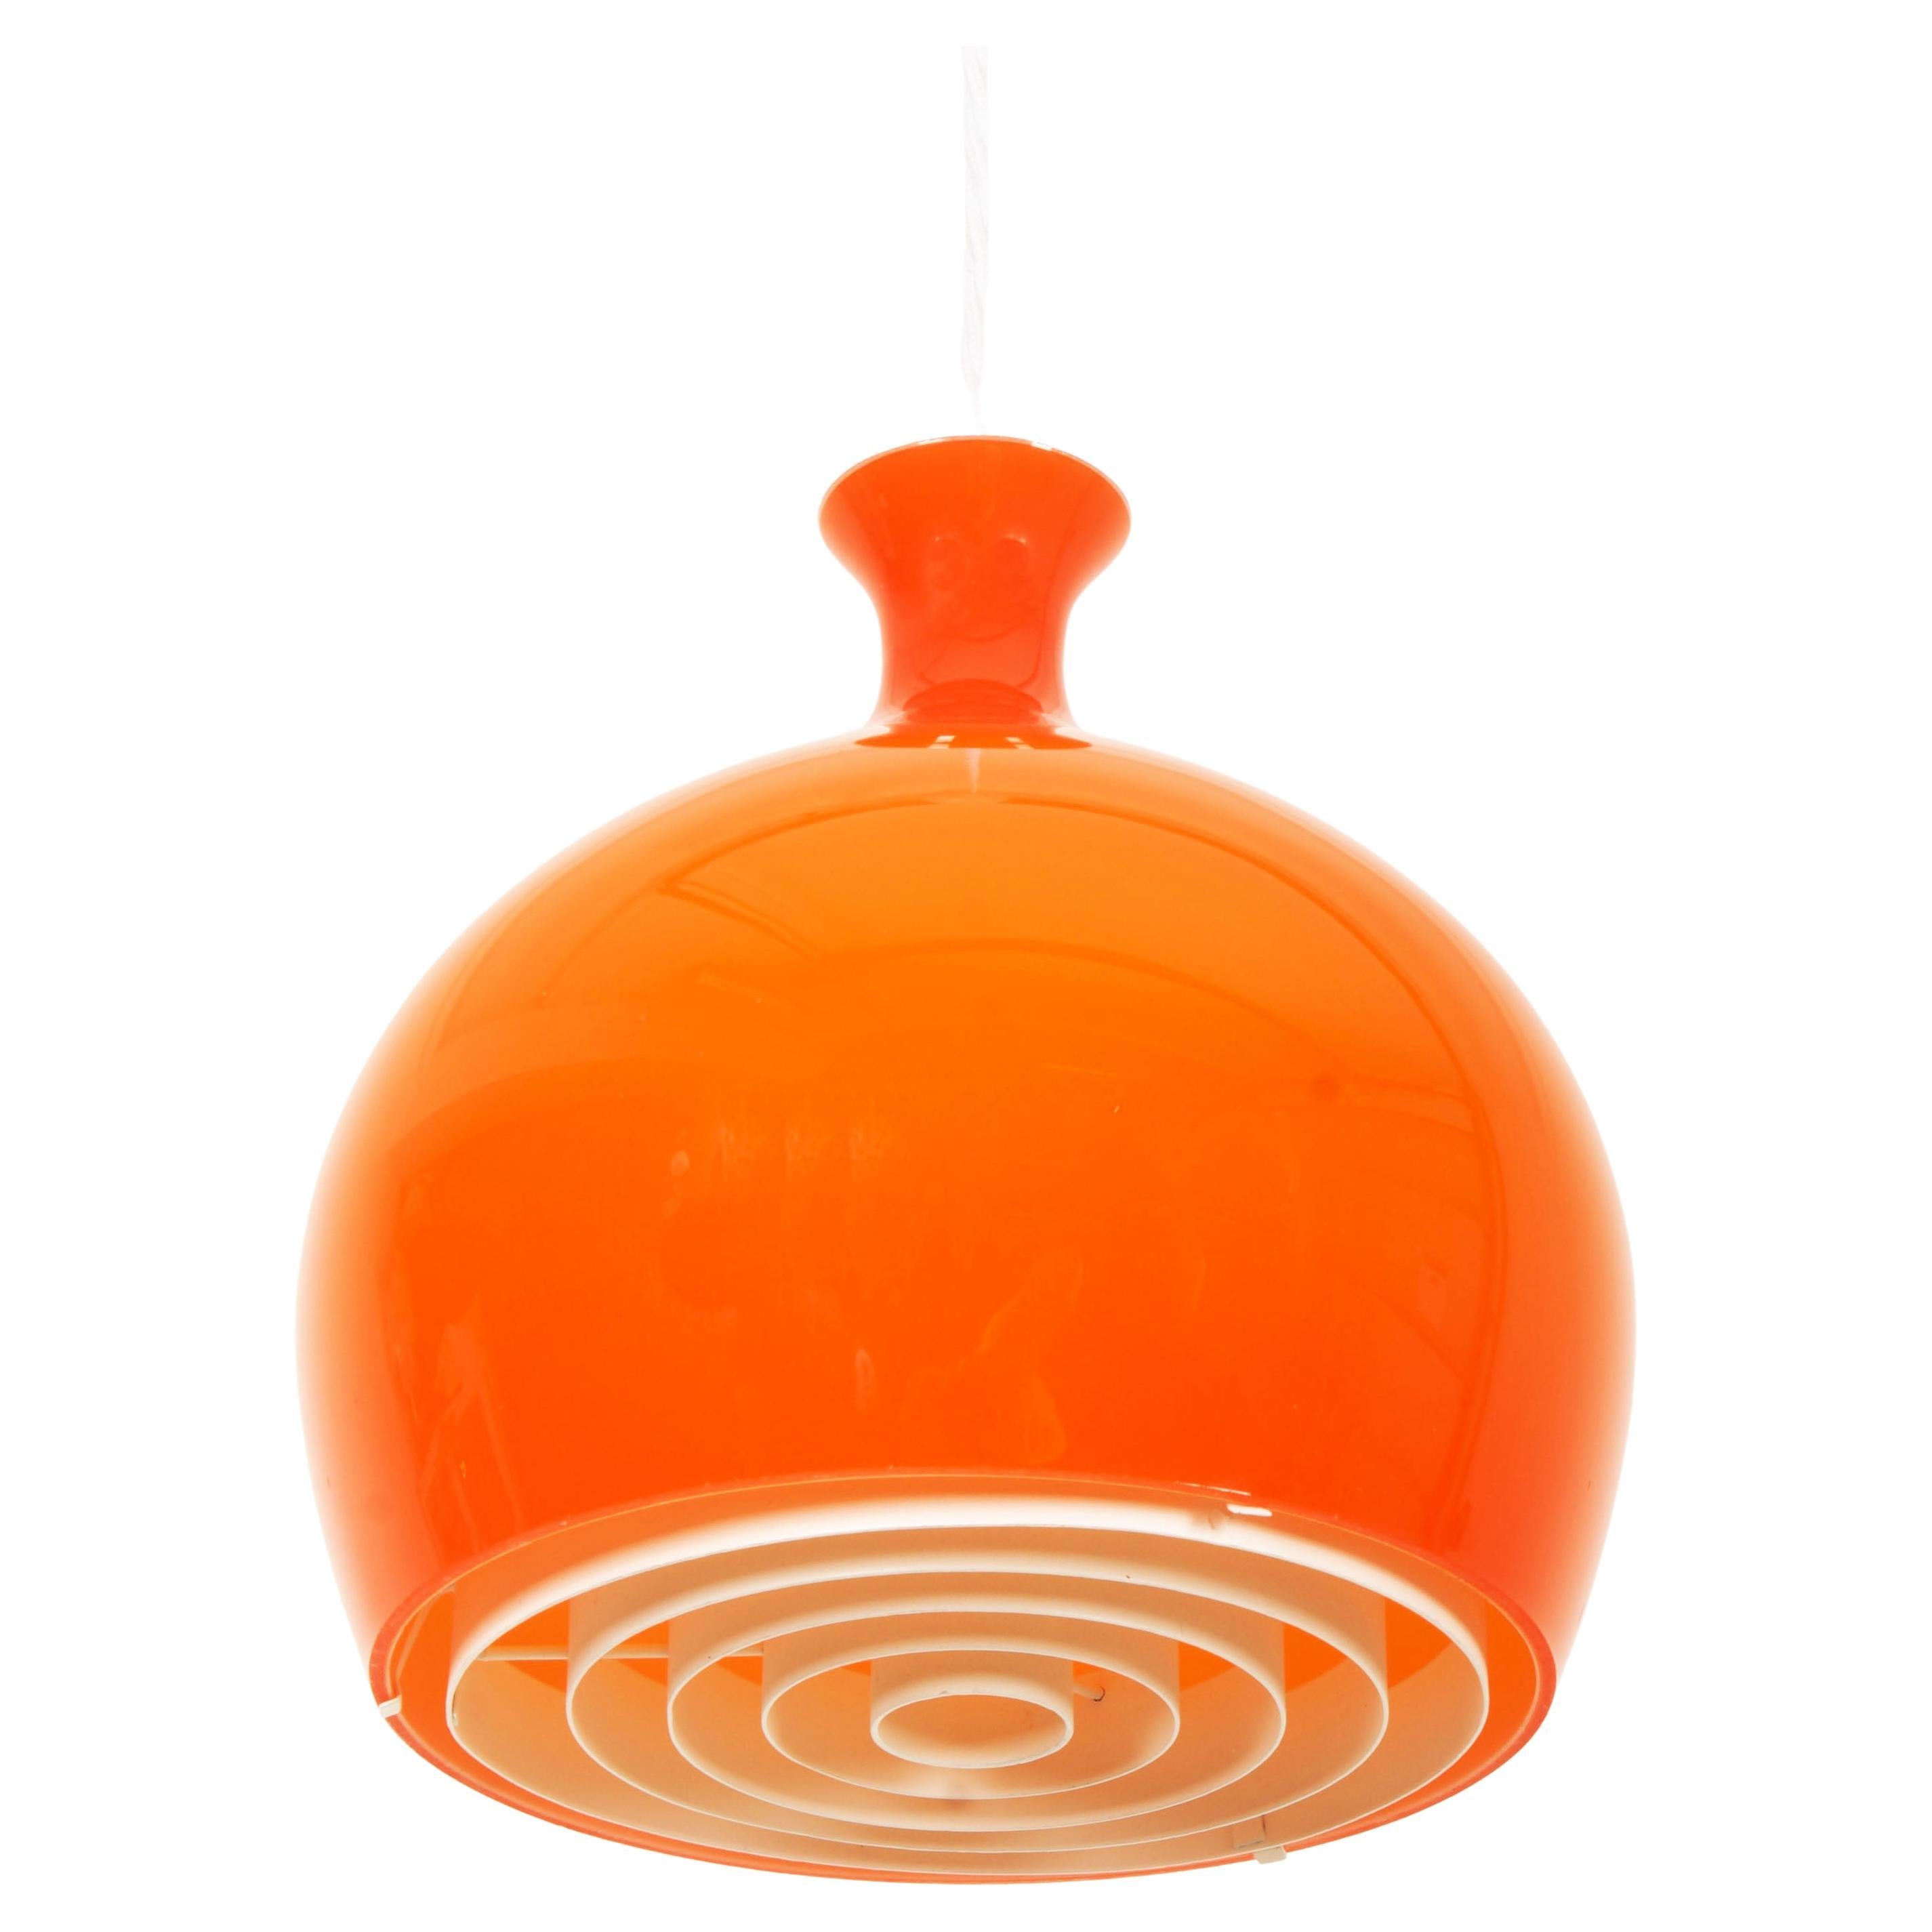 Rare Onion Pendants in Orange Glass by Helge Zimdal